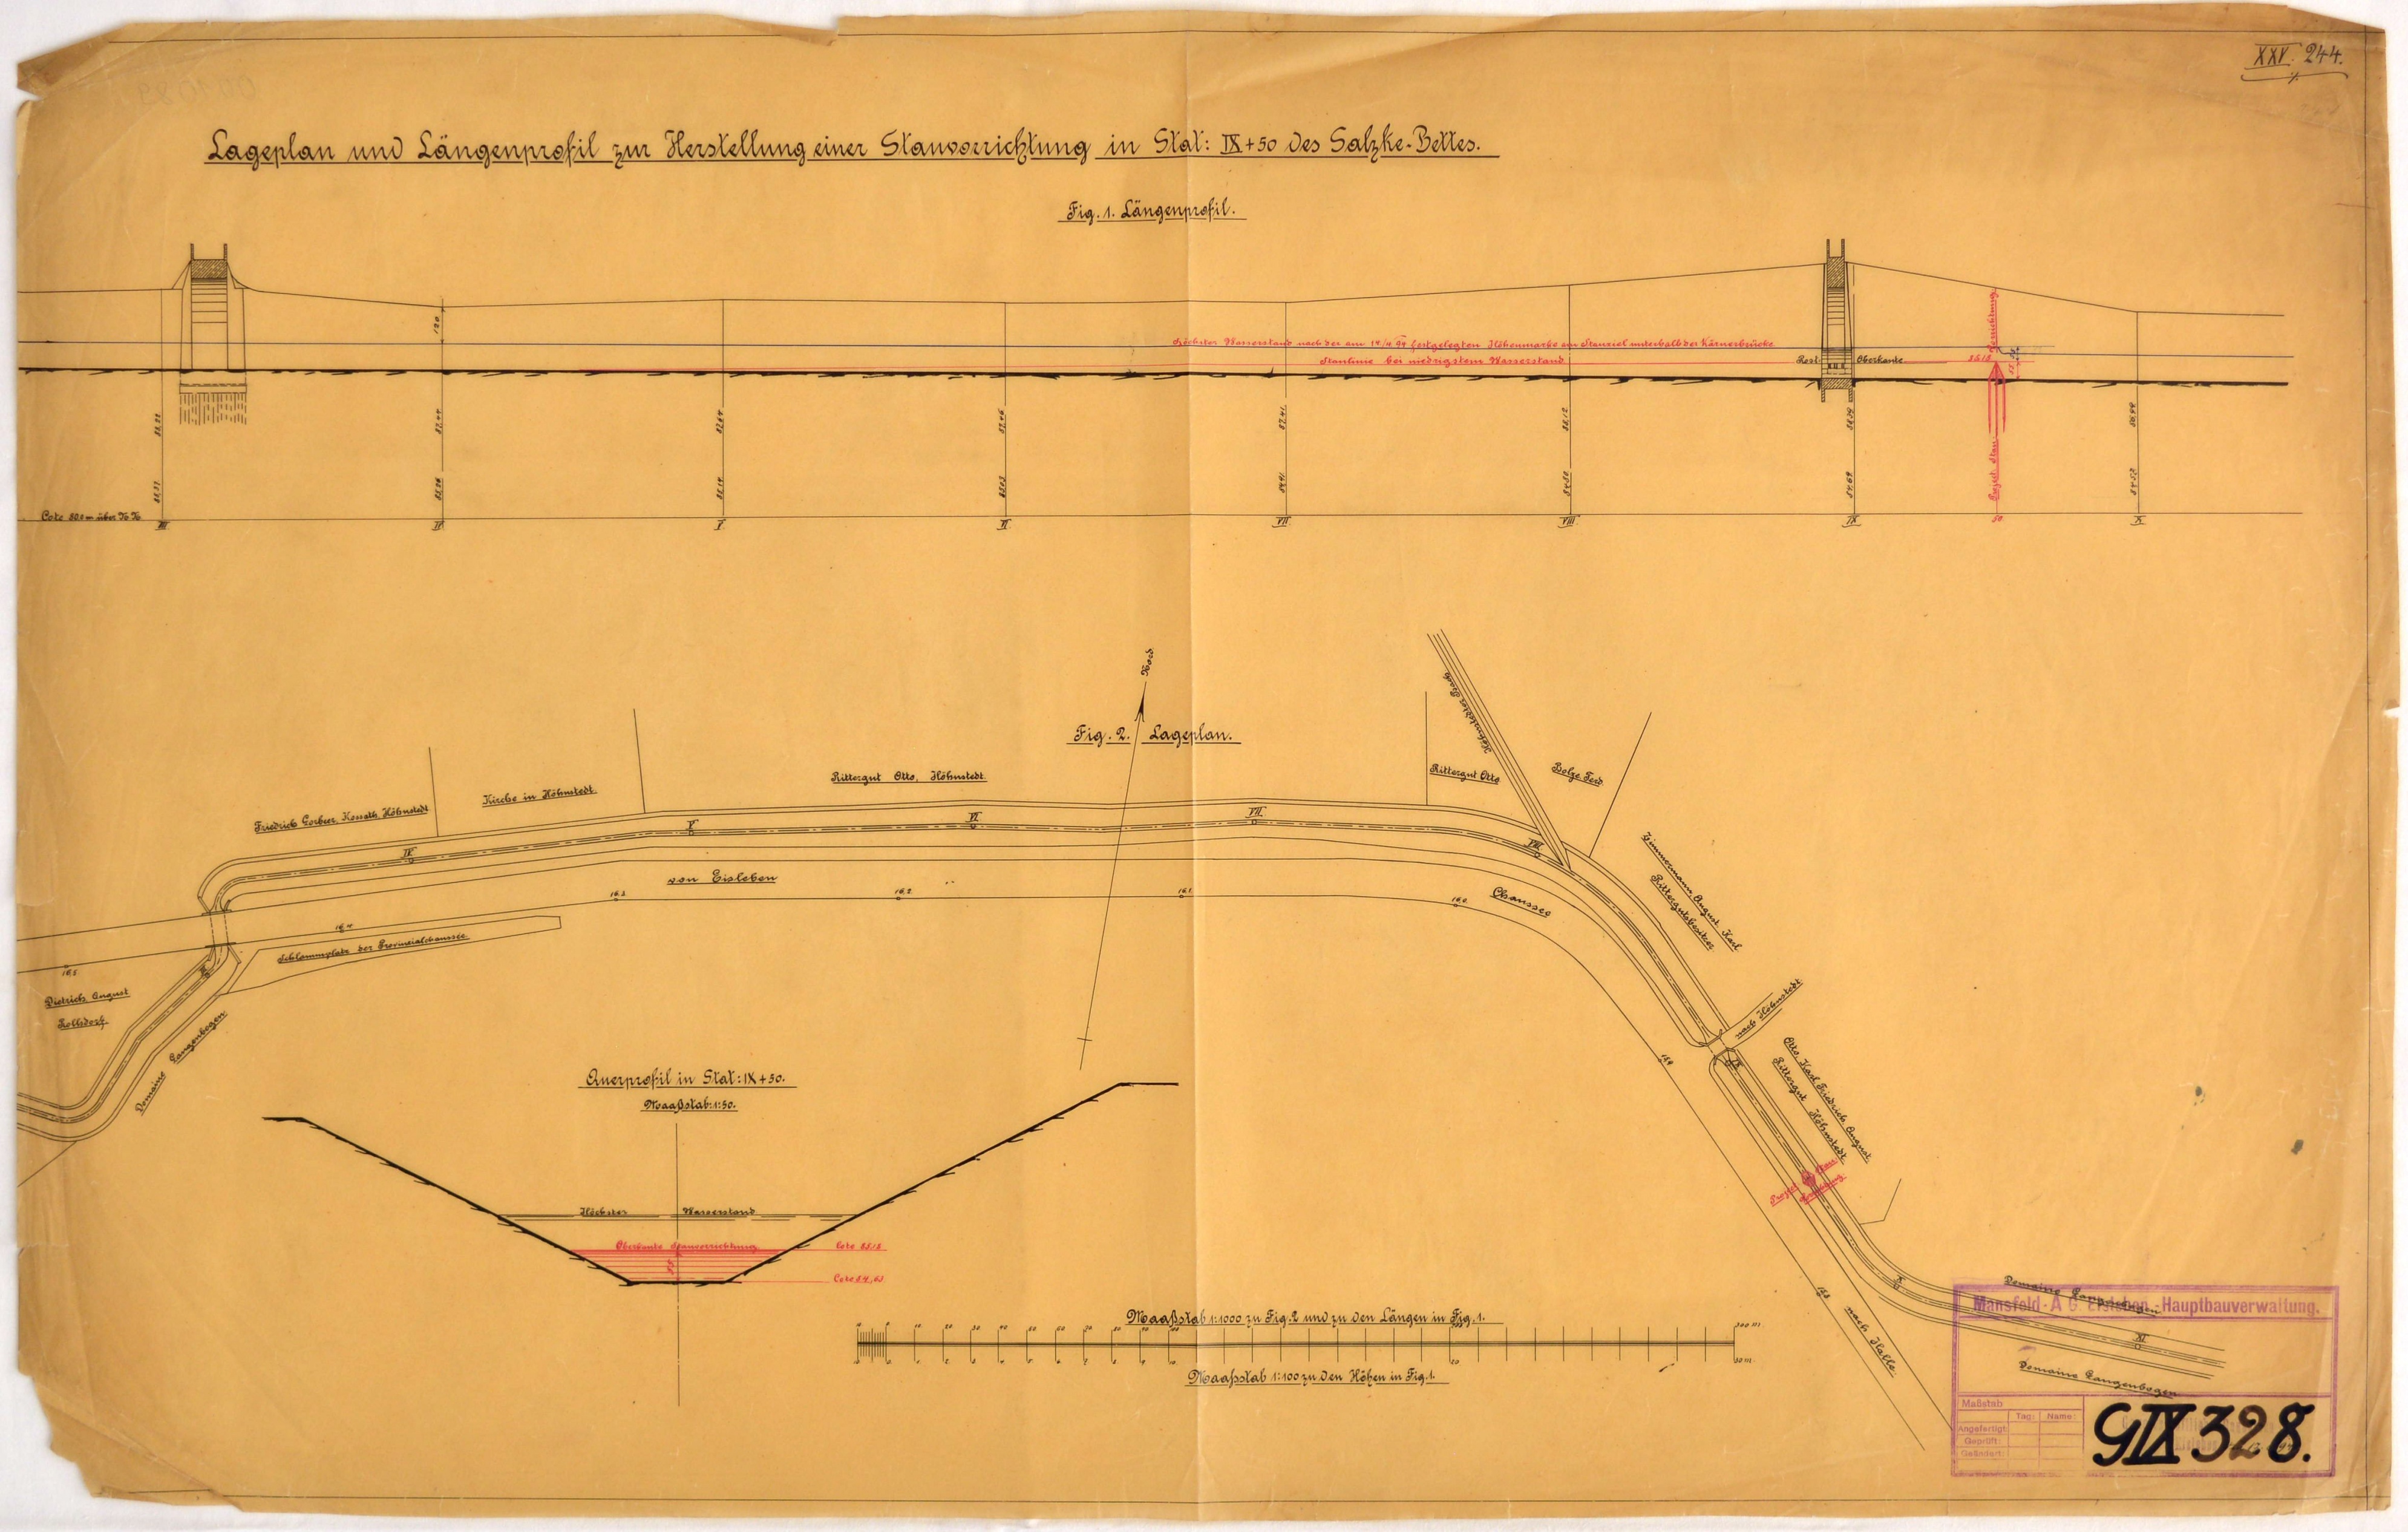 Lageplan und Längenprofil zur Herstellung einer Stauvorrichtung in Stat: IX+50 des Salzke-Bettes. (Mansfeld-Museum im Humboldt-Schloss CC BY-NC-SA)